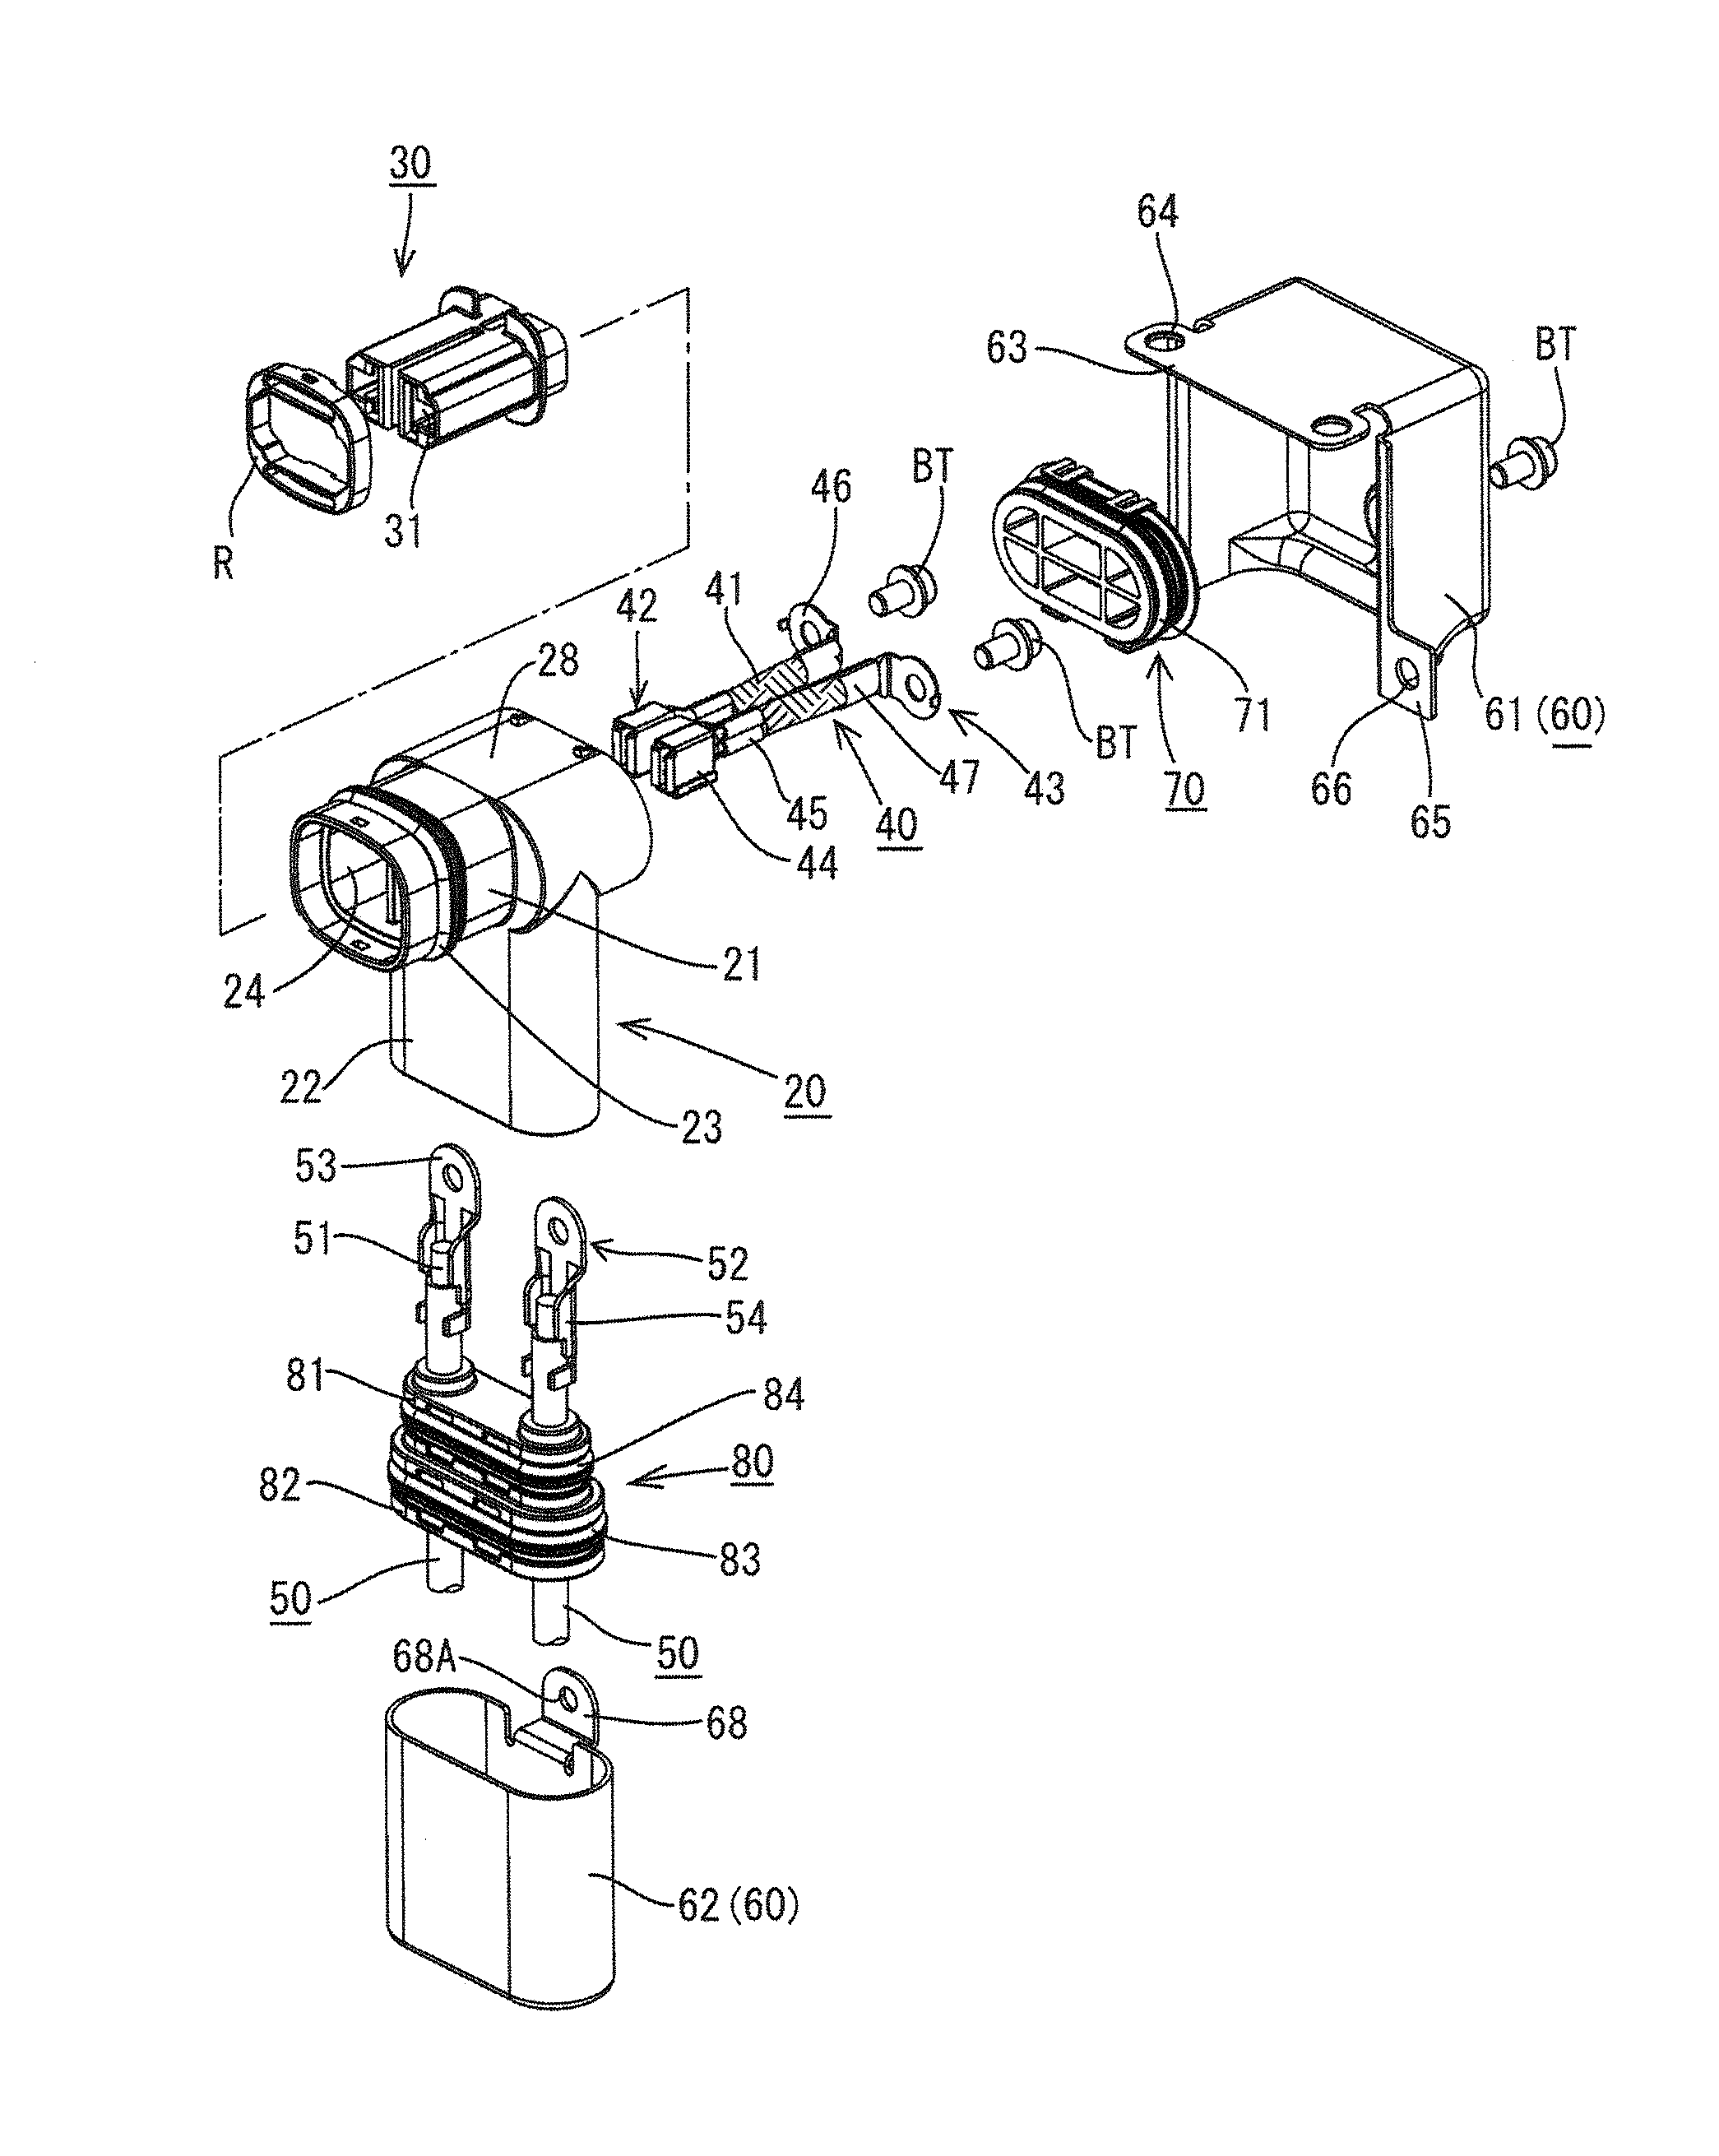 Shield connector